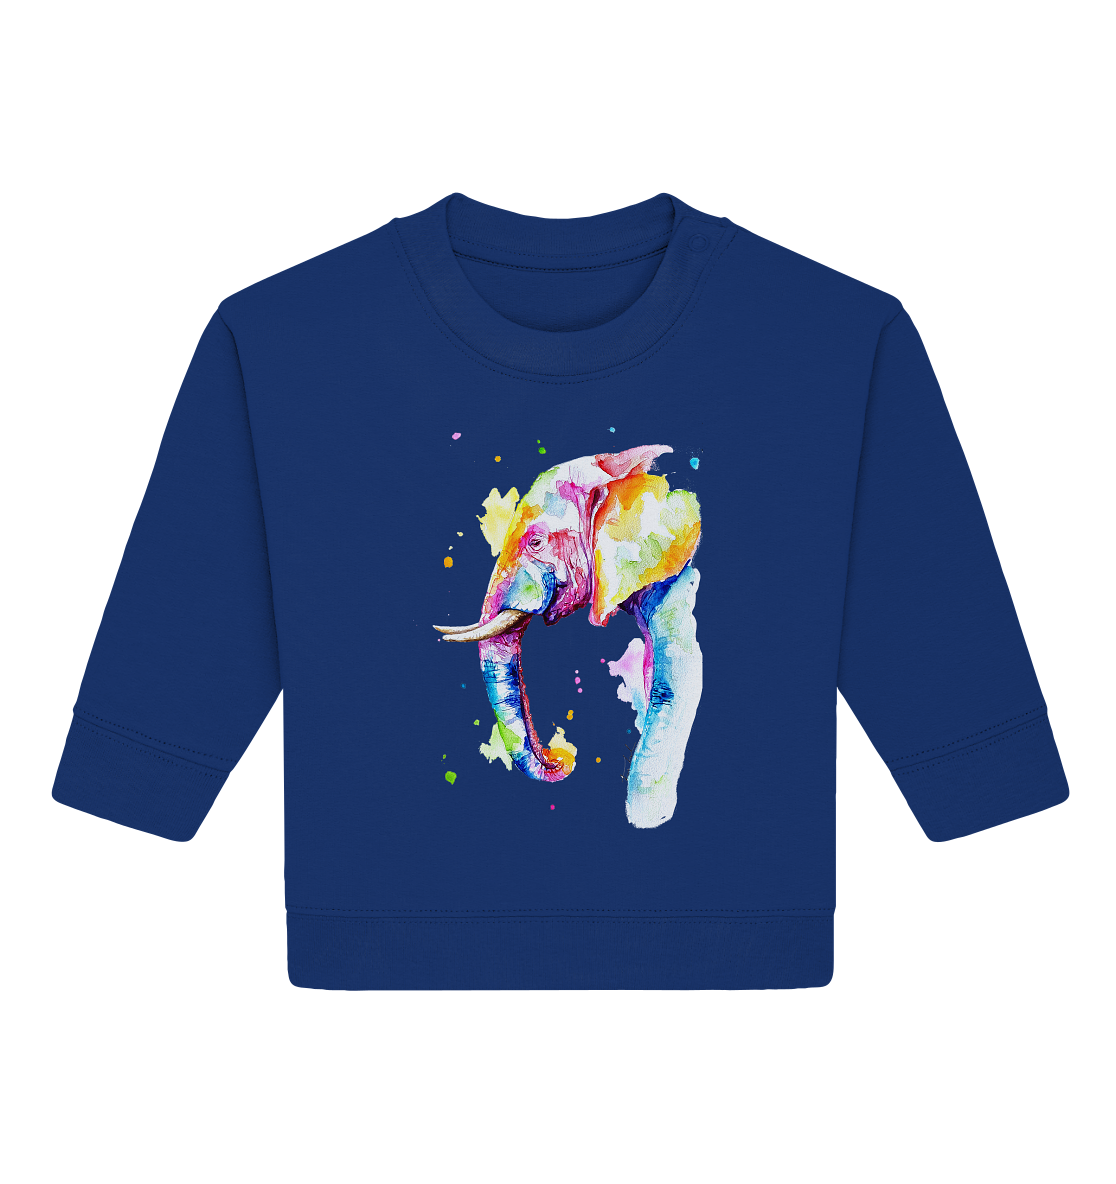 Bunter Elefant - Baby Organic Sweatshirt